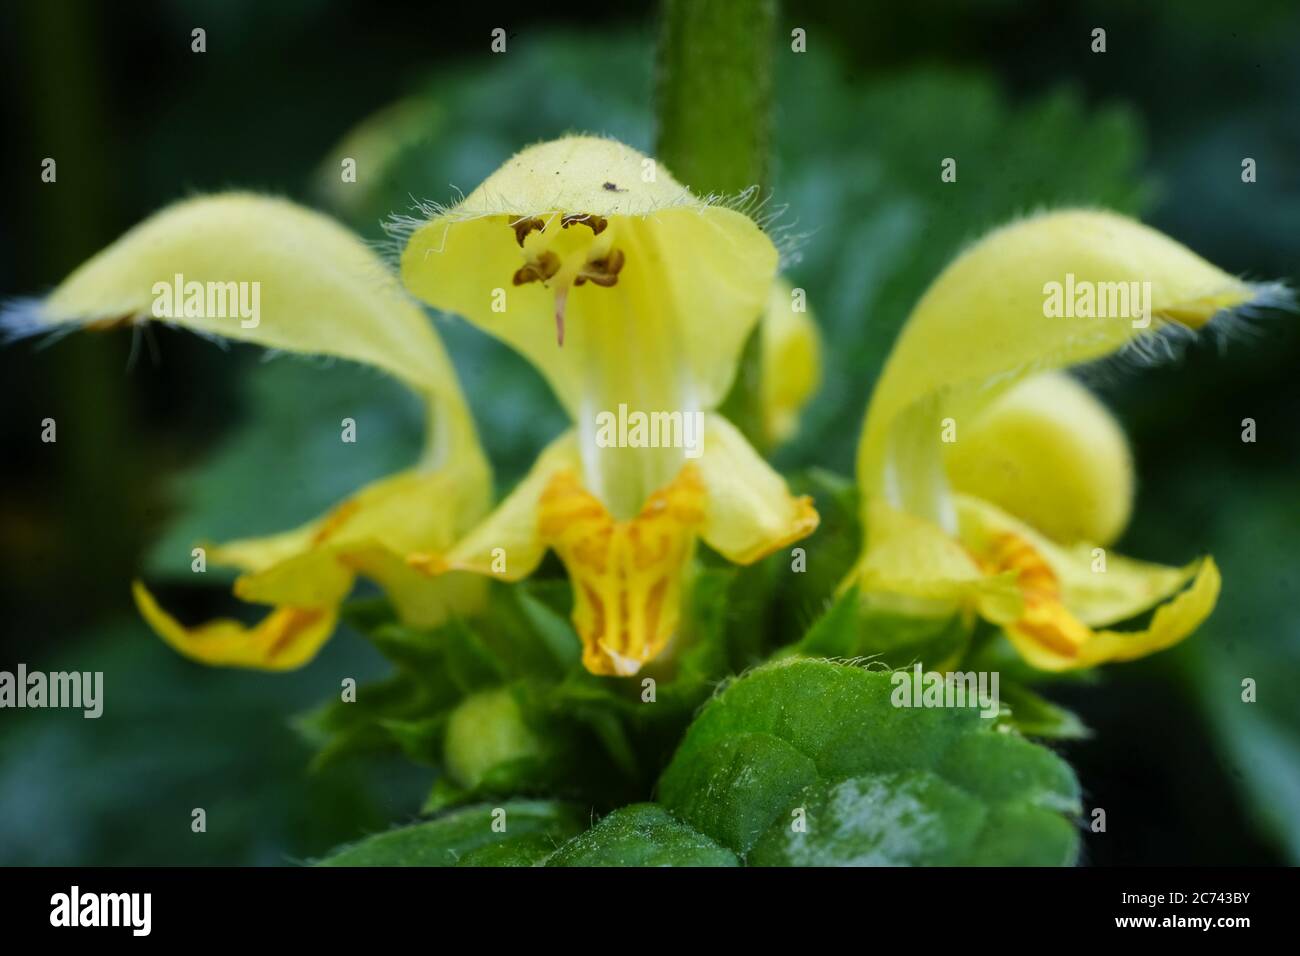 Nahaufnahme von gelben Lamium oder toten Brennnesseln Blumen in einem Garten. Die feinen Auswuchzer oder Haare, feine Auswuchzer an den Knospen und Blüten sind deutlich visib Stockfoto